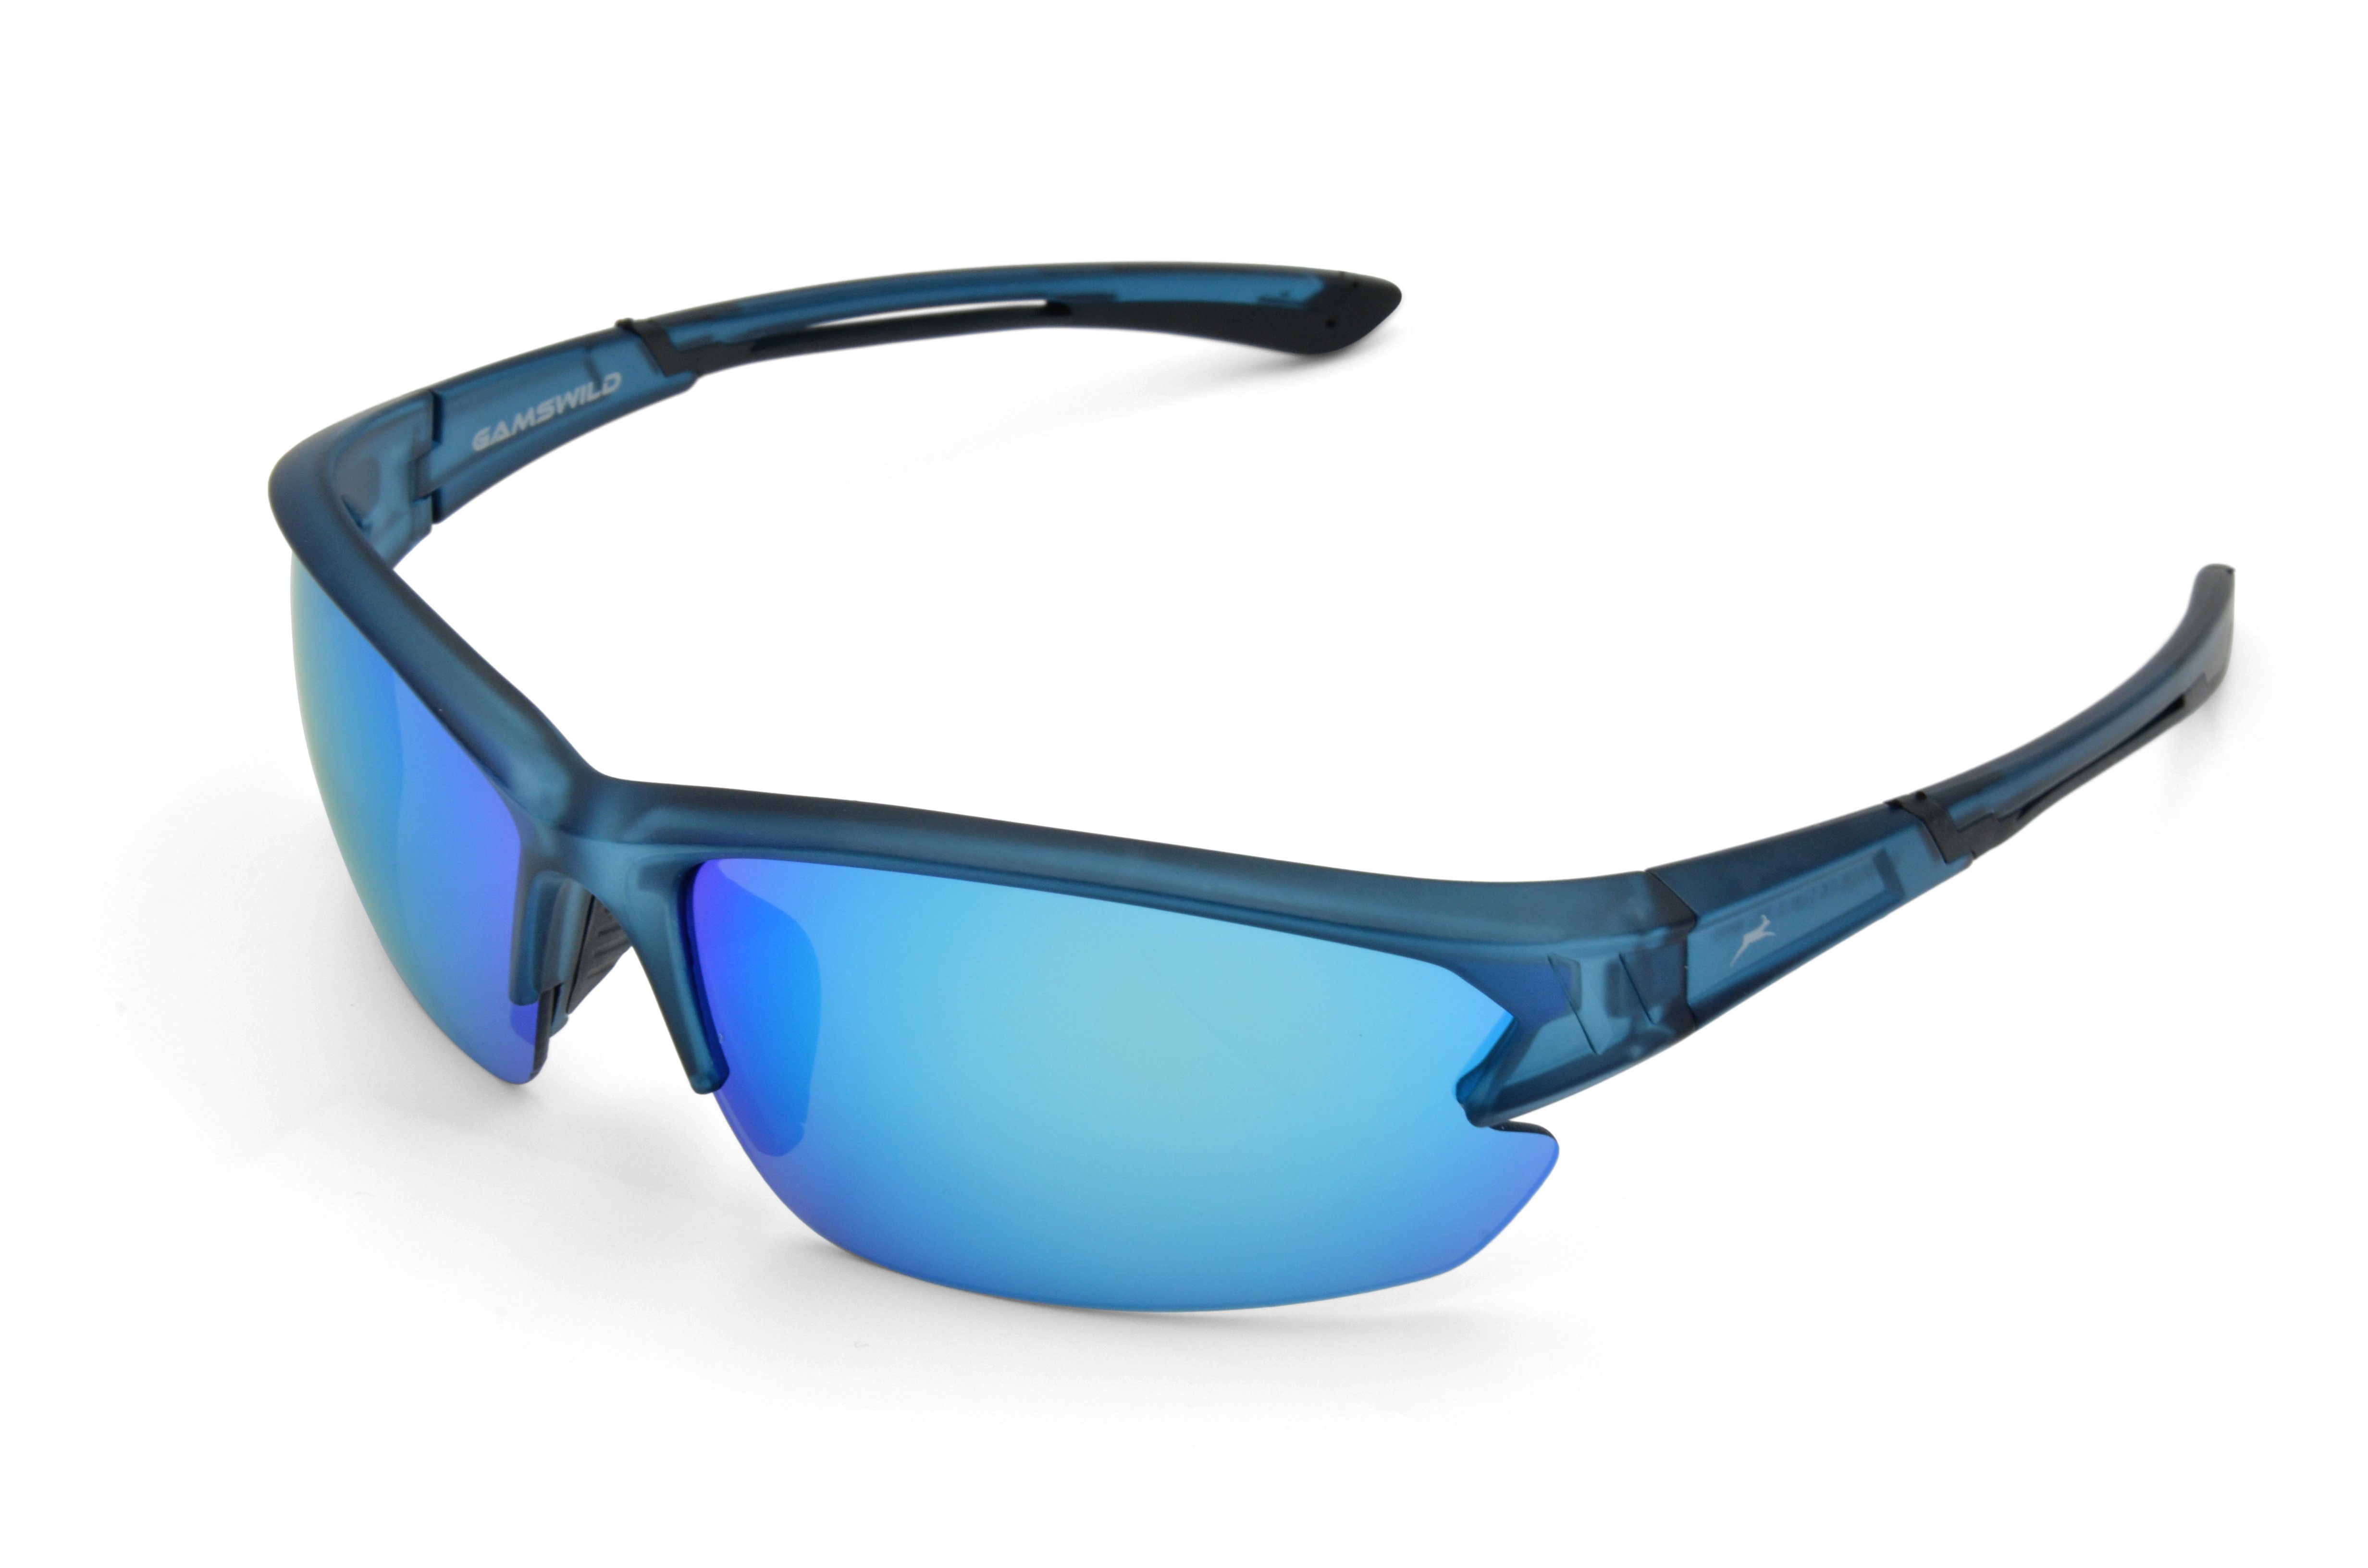 Gamswild Sportbrille WS6028 Sonnenbrille Damen Herren Skibrille Fahrradbrille Unisex, blau, rot-orange, violett, Halbrahmenbrille | Fahrradbrillen